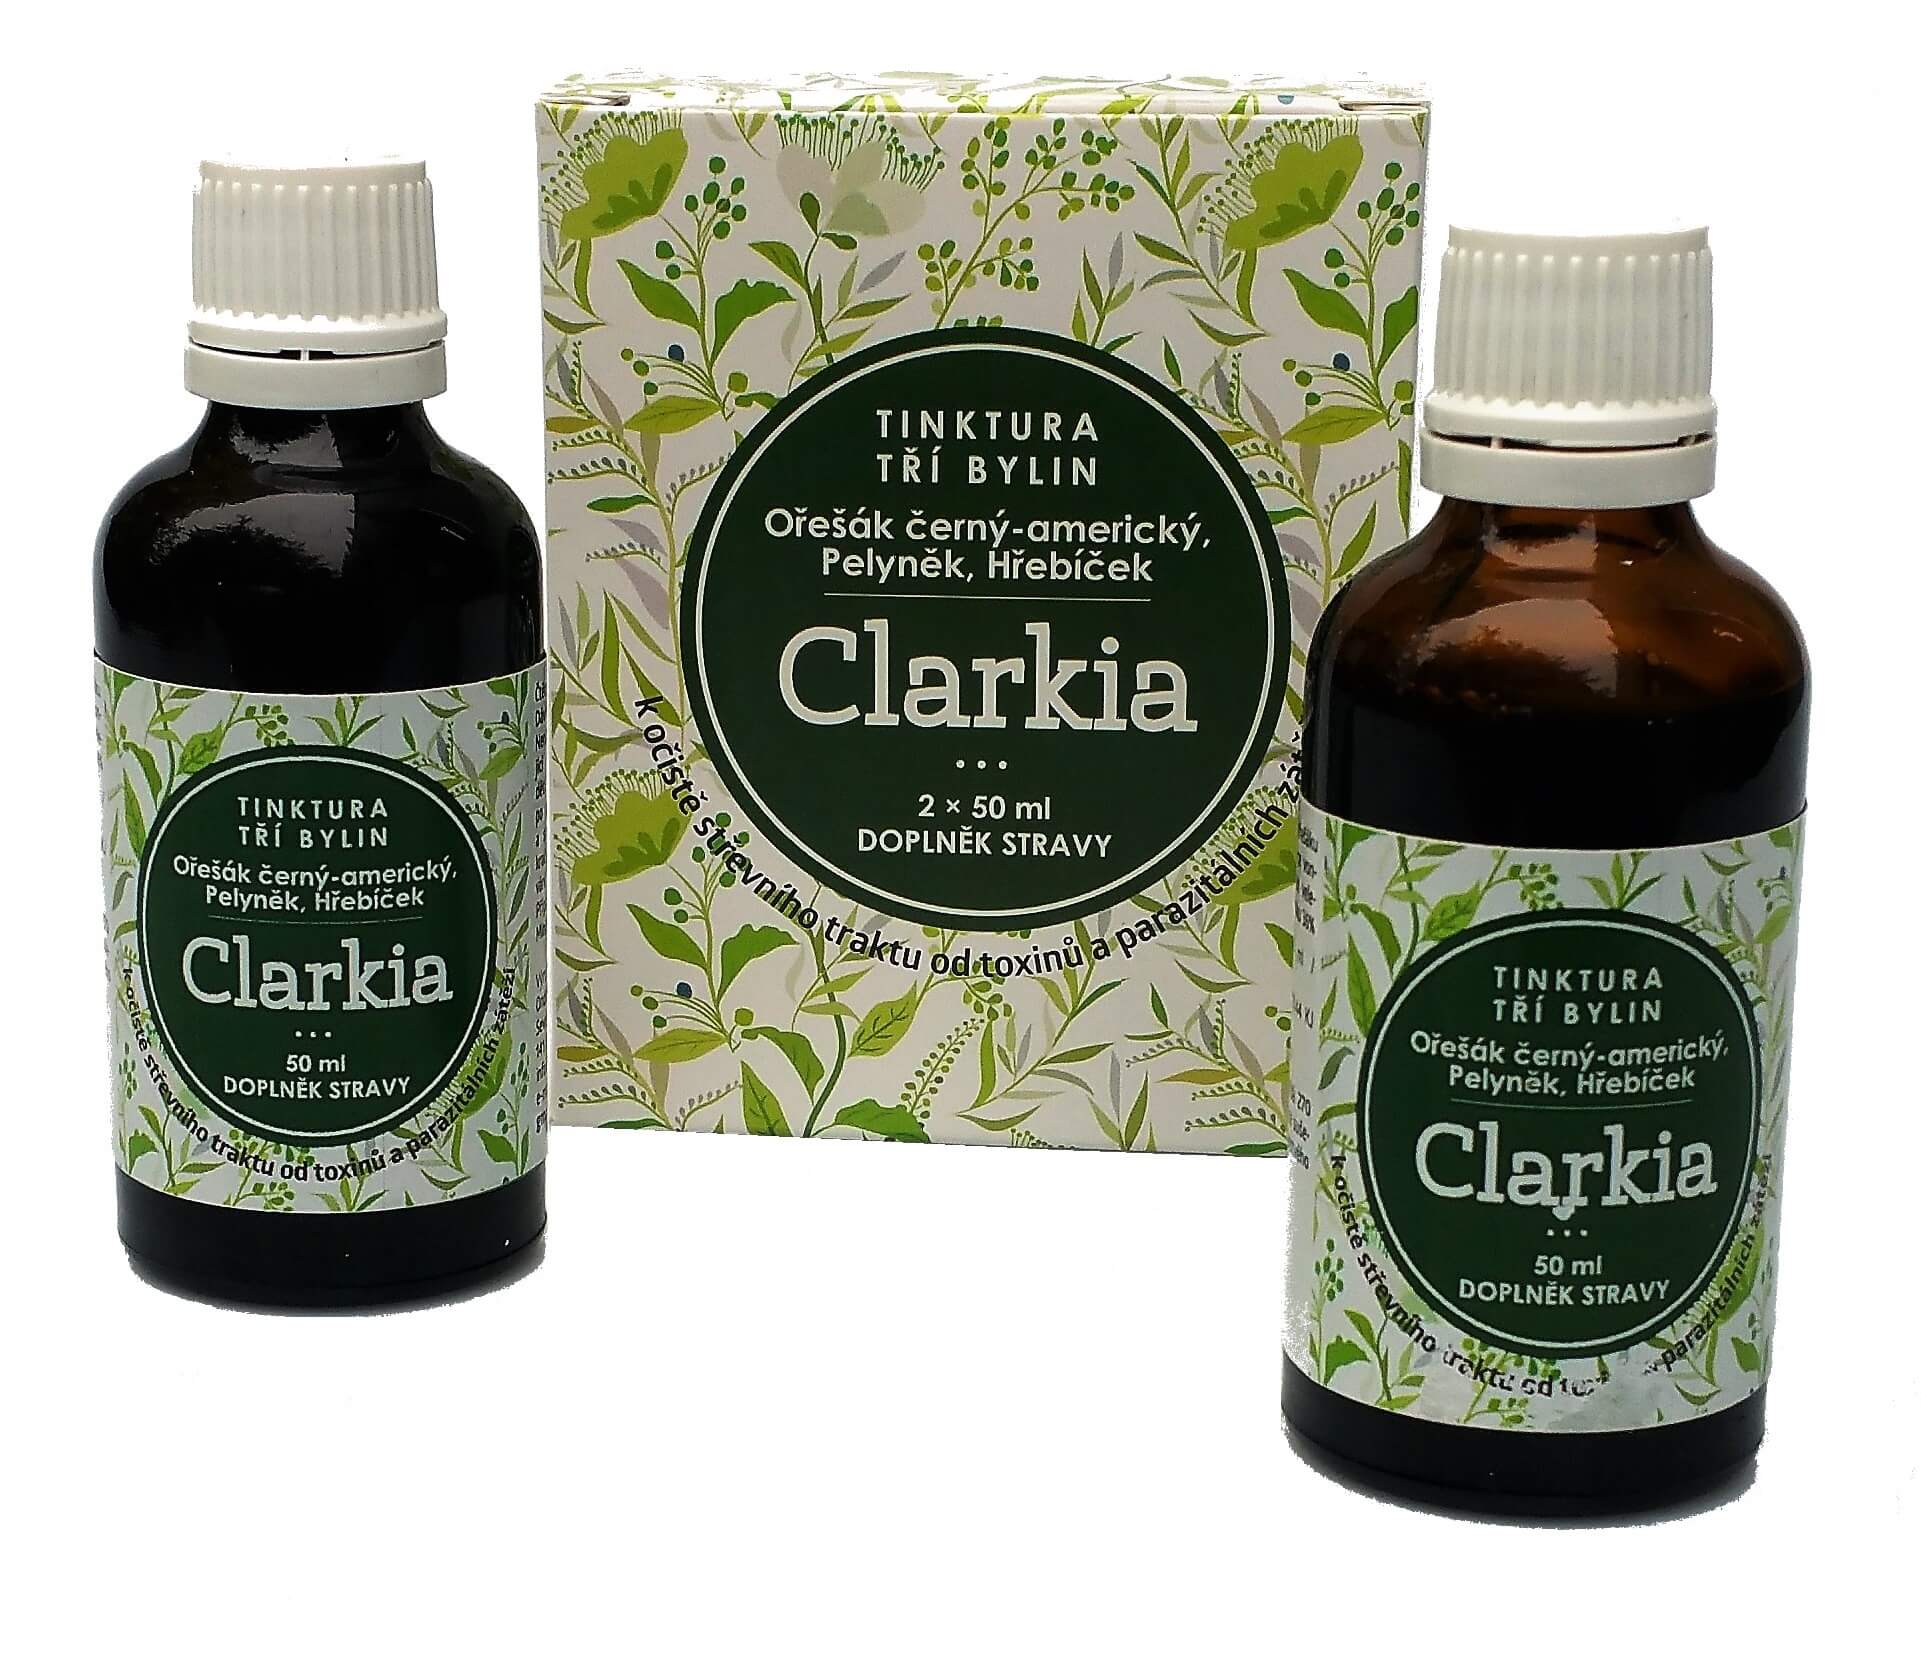 Dr. CLARK Clarkia - tinktura tří bylin 2 x 50 ml